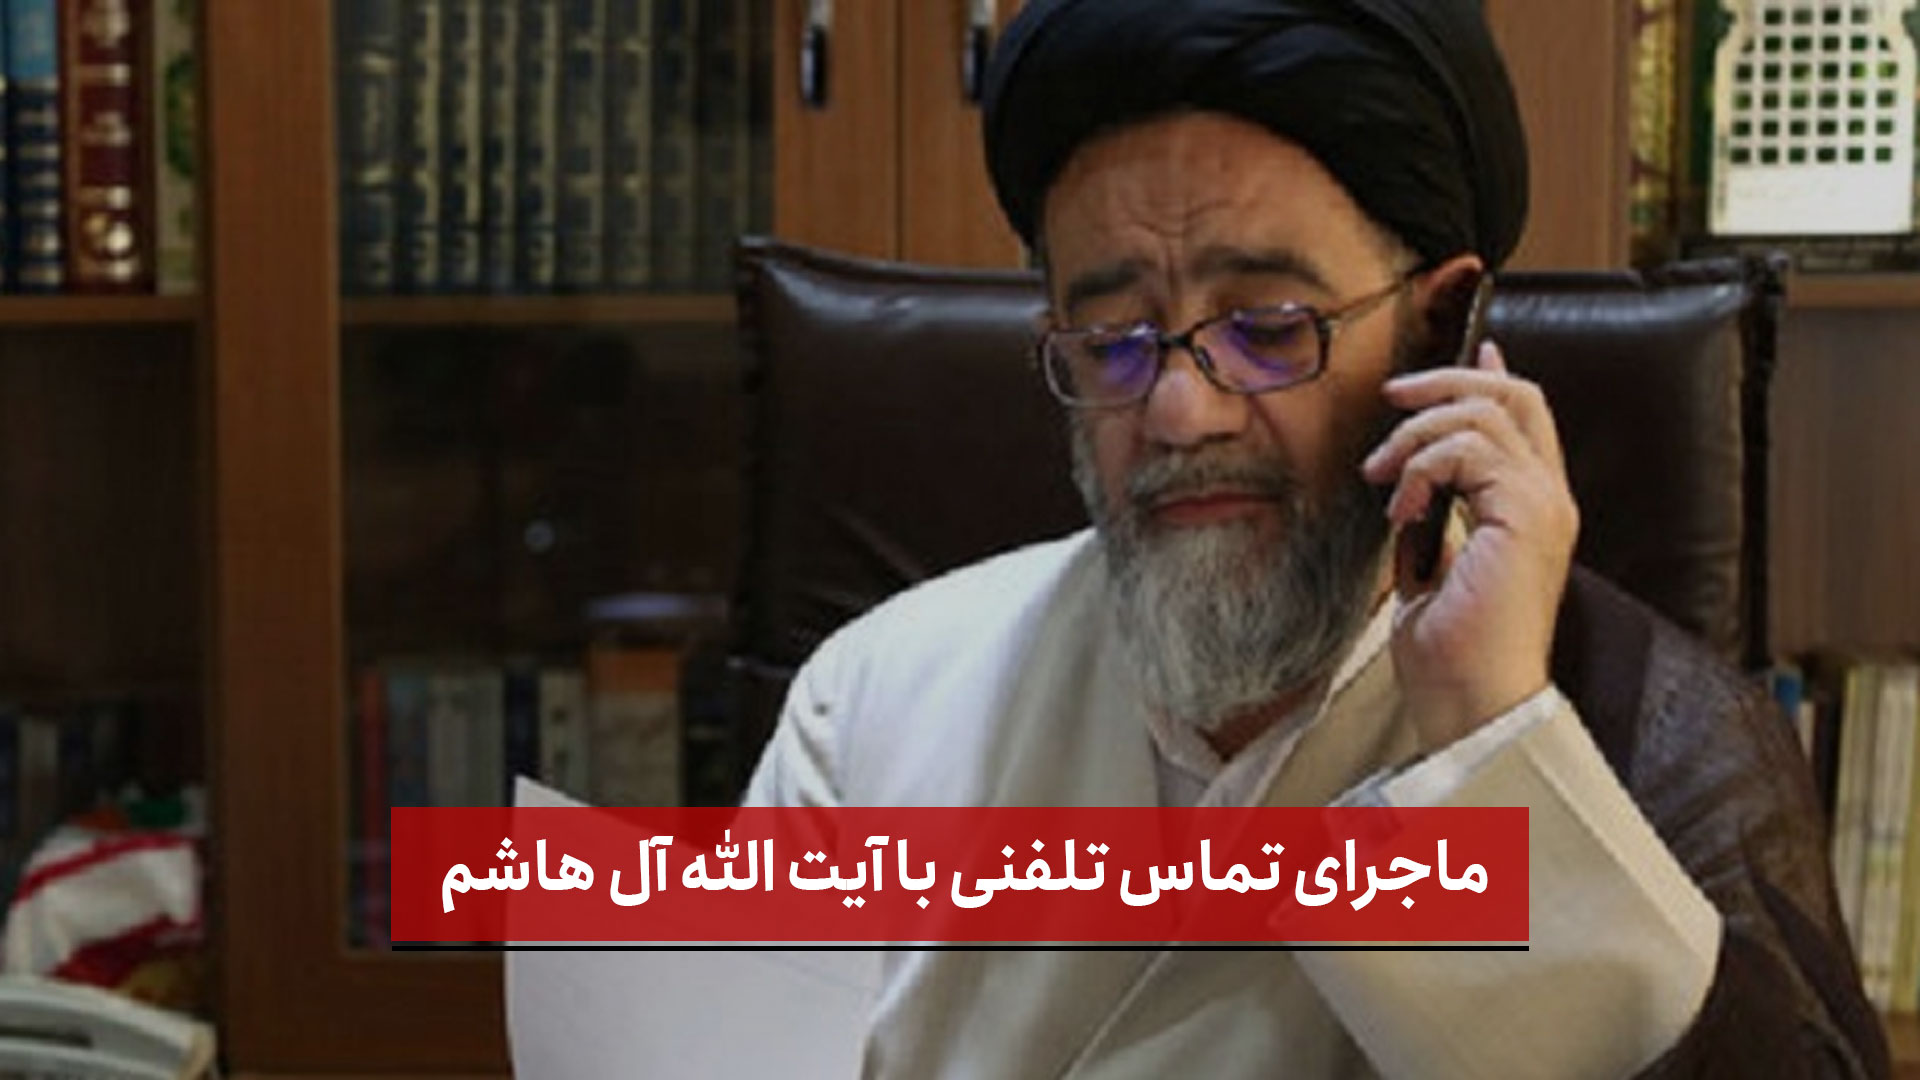 فیلم | ماجرای تماس تلفنی با آیت الله آل هاشم از زبان غلامحسین اسماعیلی